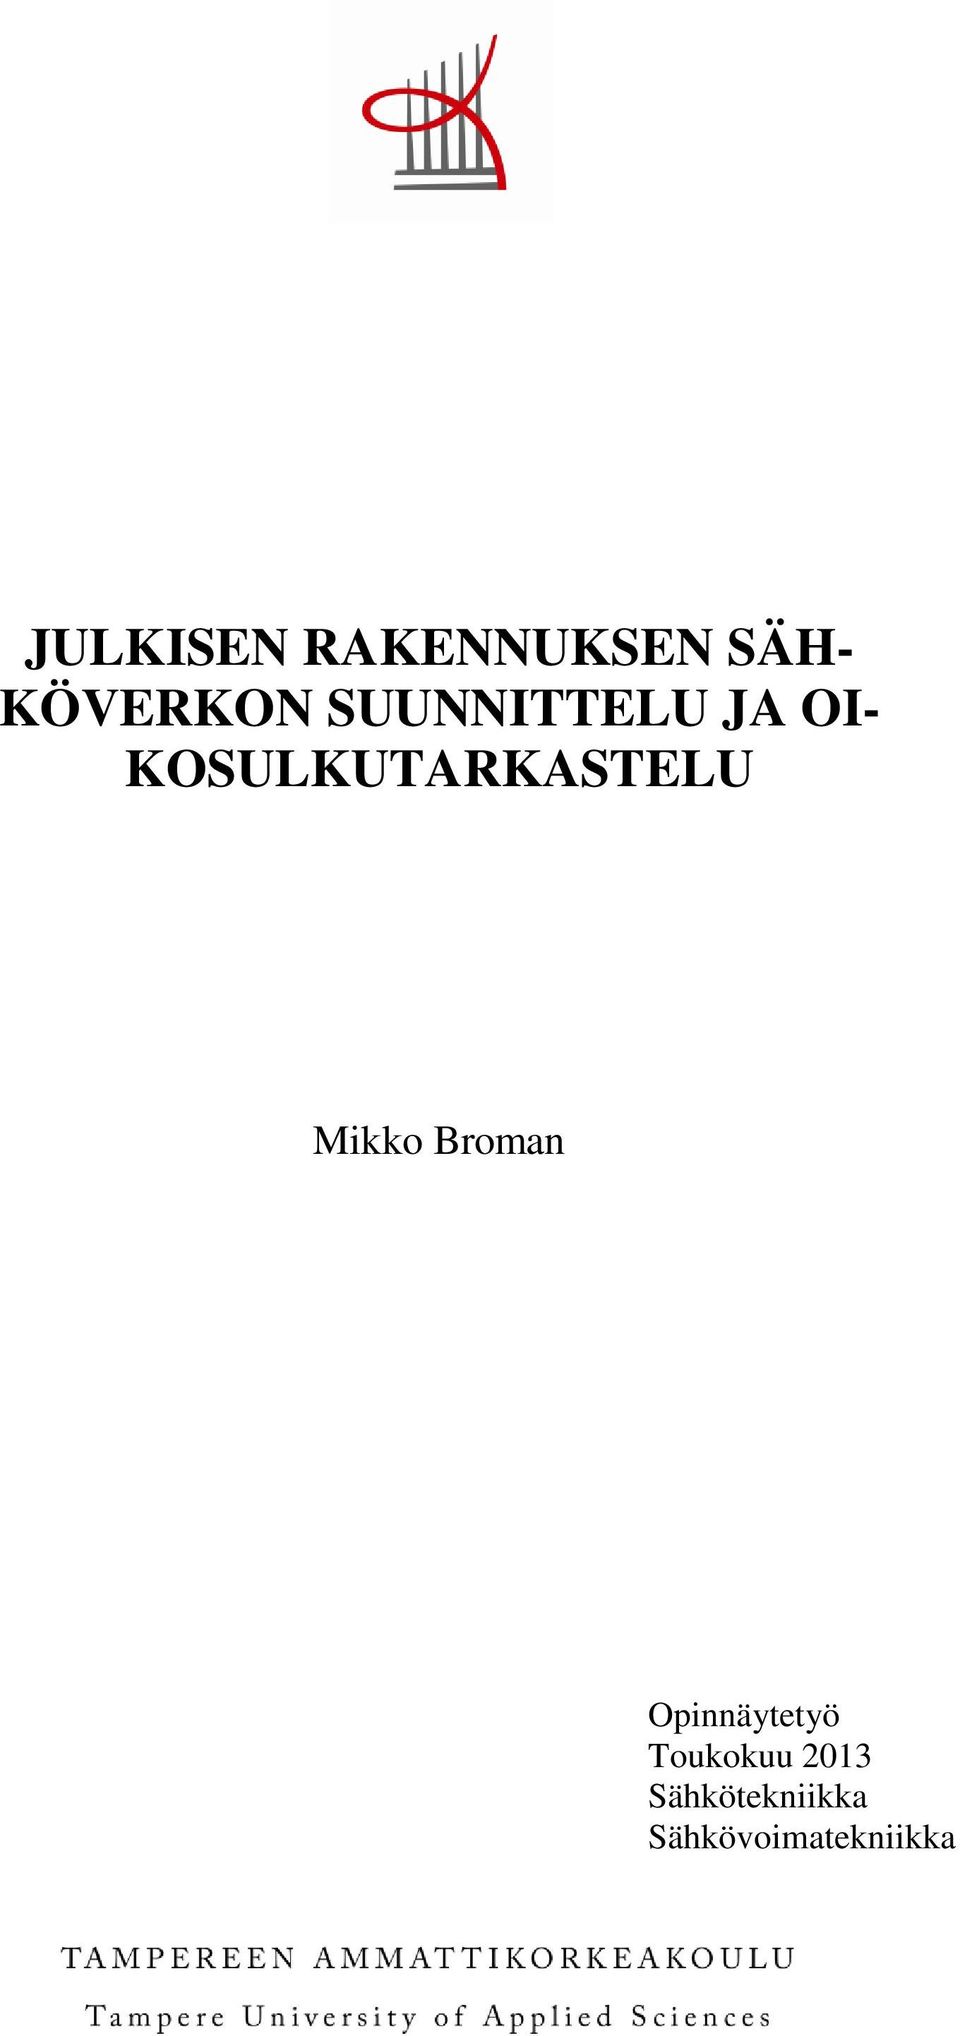 Mikko Broman Opinnäytetyö Toukokuu